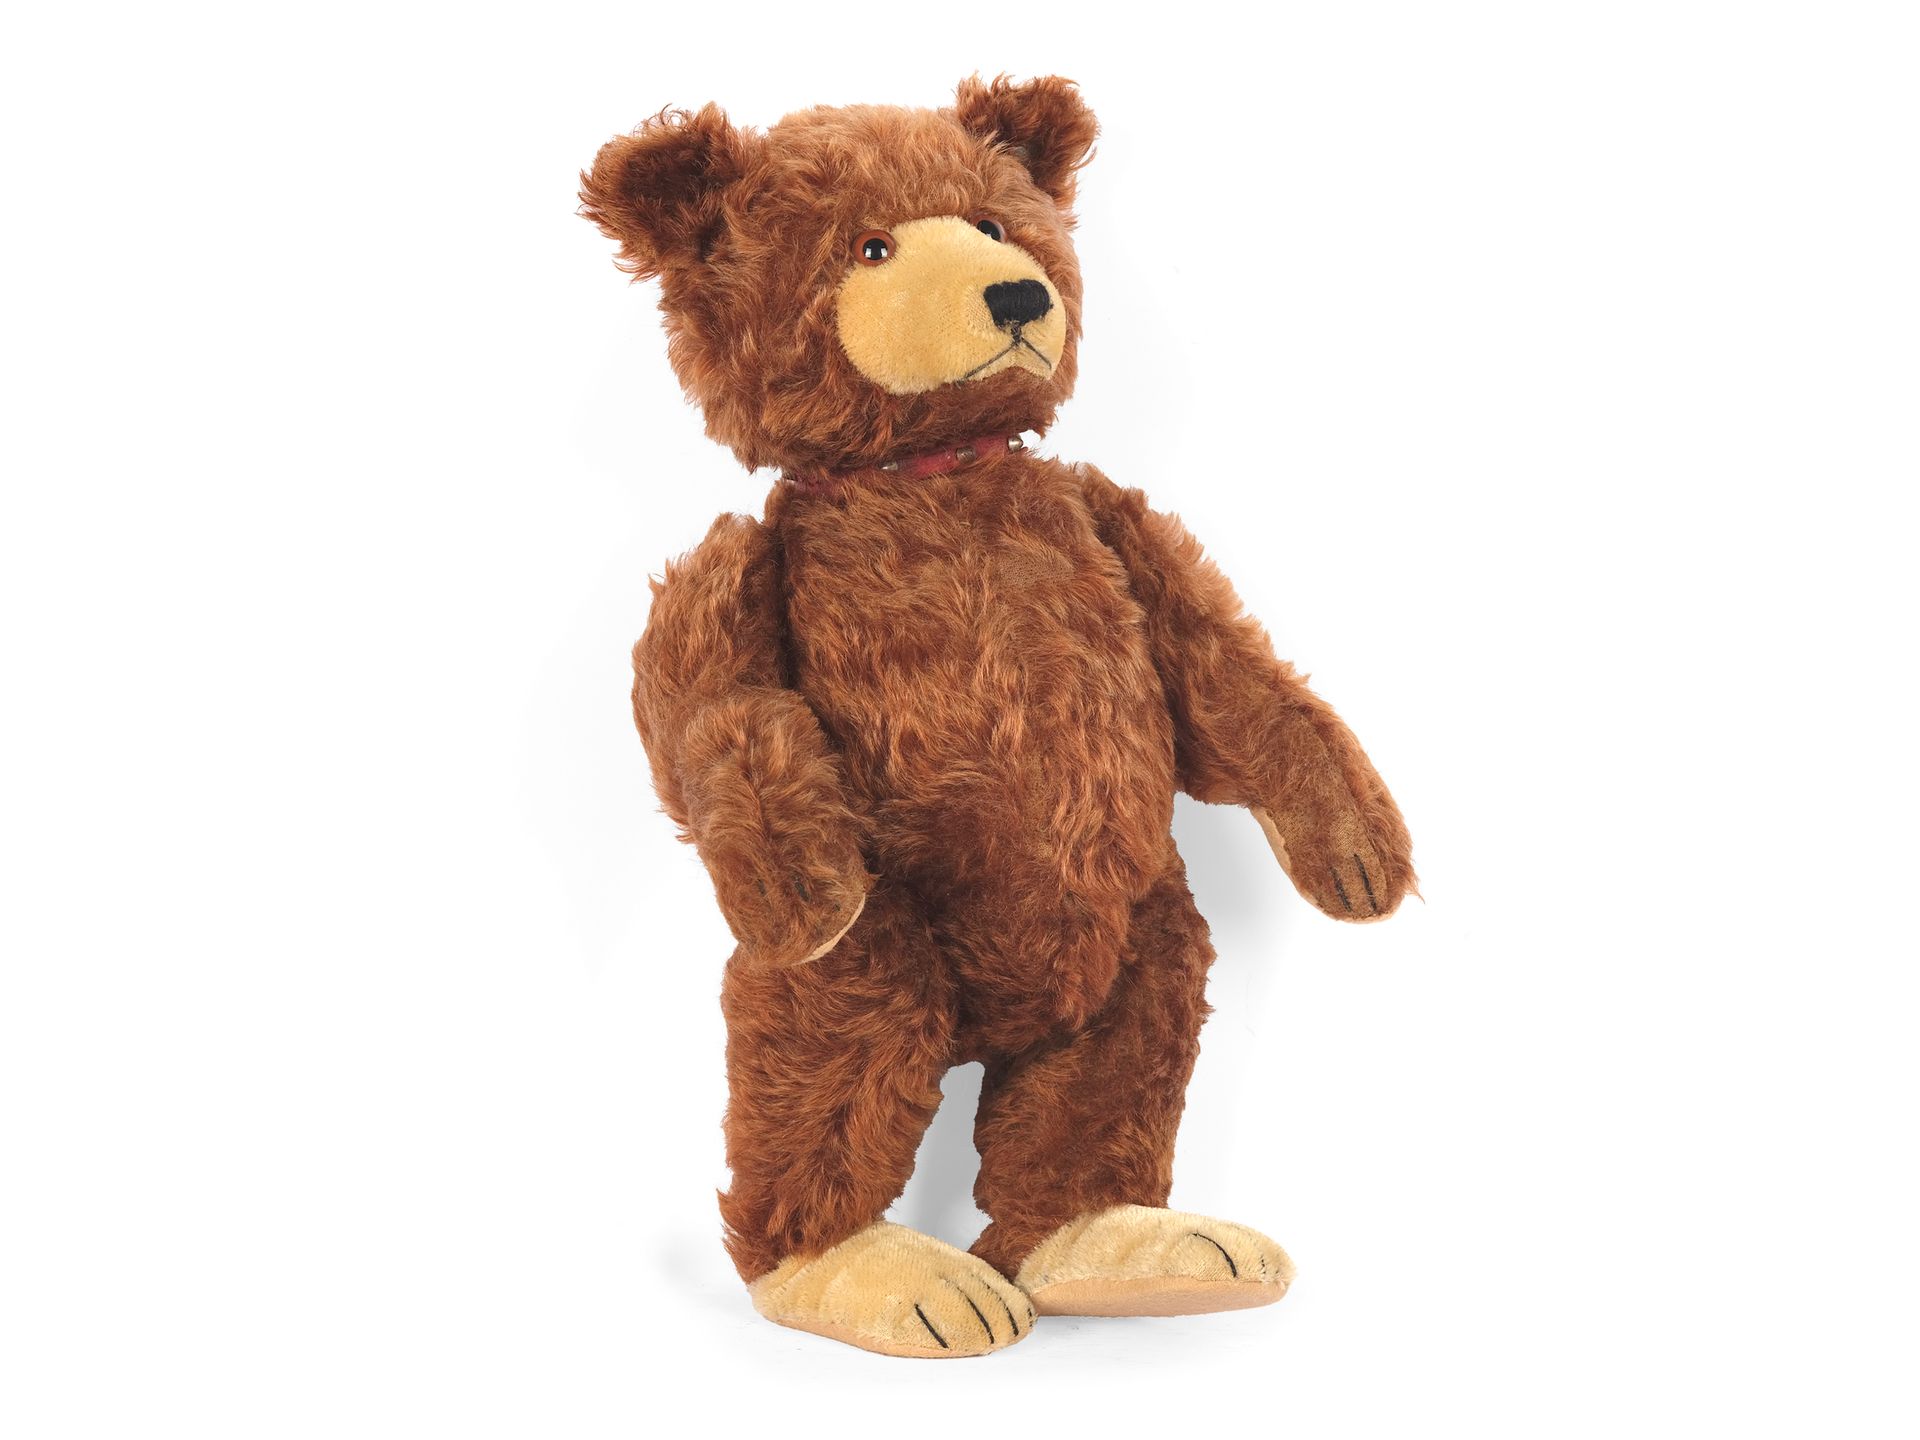 Null Teddybär „Baby“
Steiff
Braune Mohairwolle
Auf der Plombe ist das langgezoge&hellip;